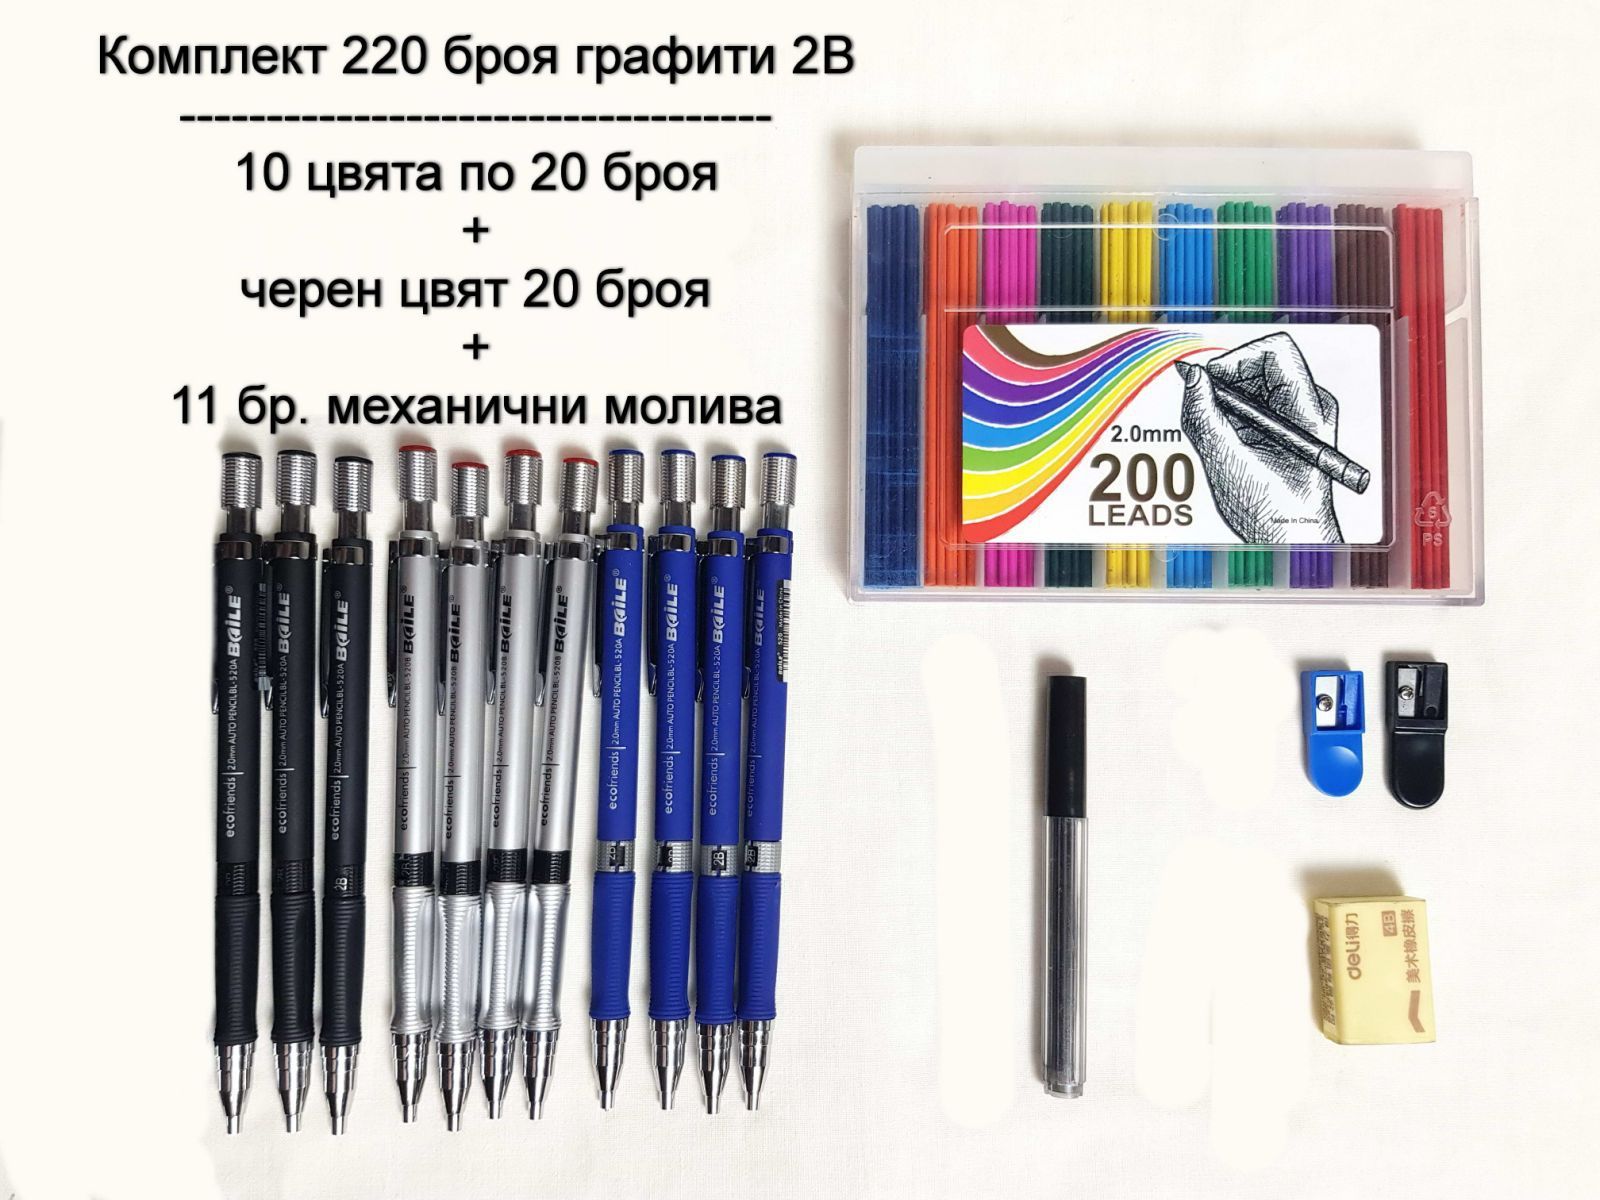 Комплект 220 графита 2B, 2мм цветни и черен + 11 бр. механични молива